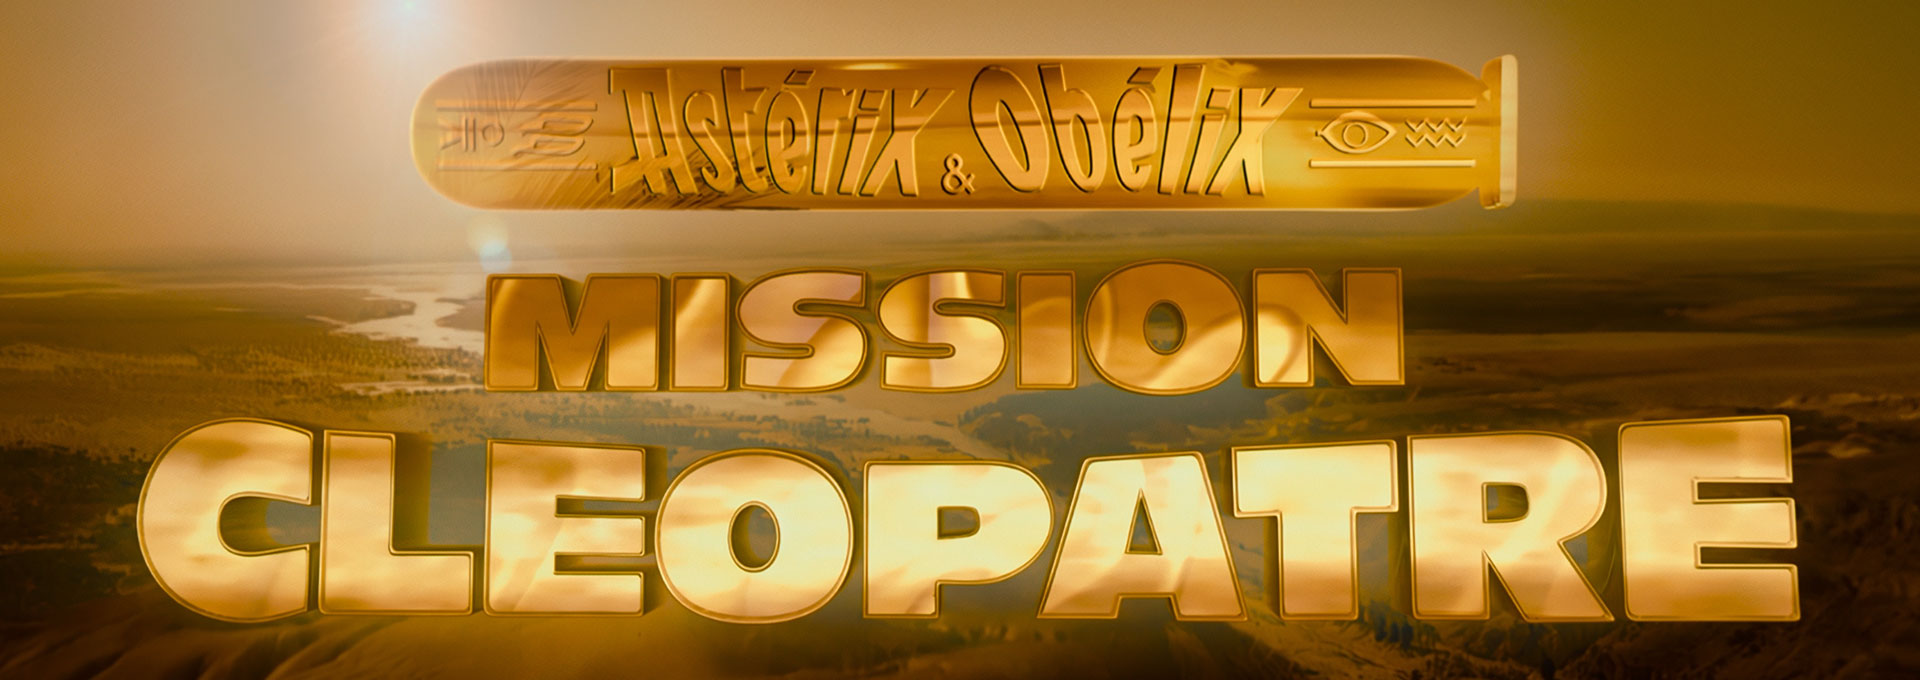 Astérix & Obélix Mission Cléopâtre - Hiventy